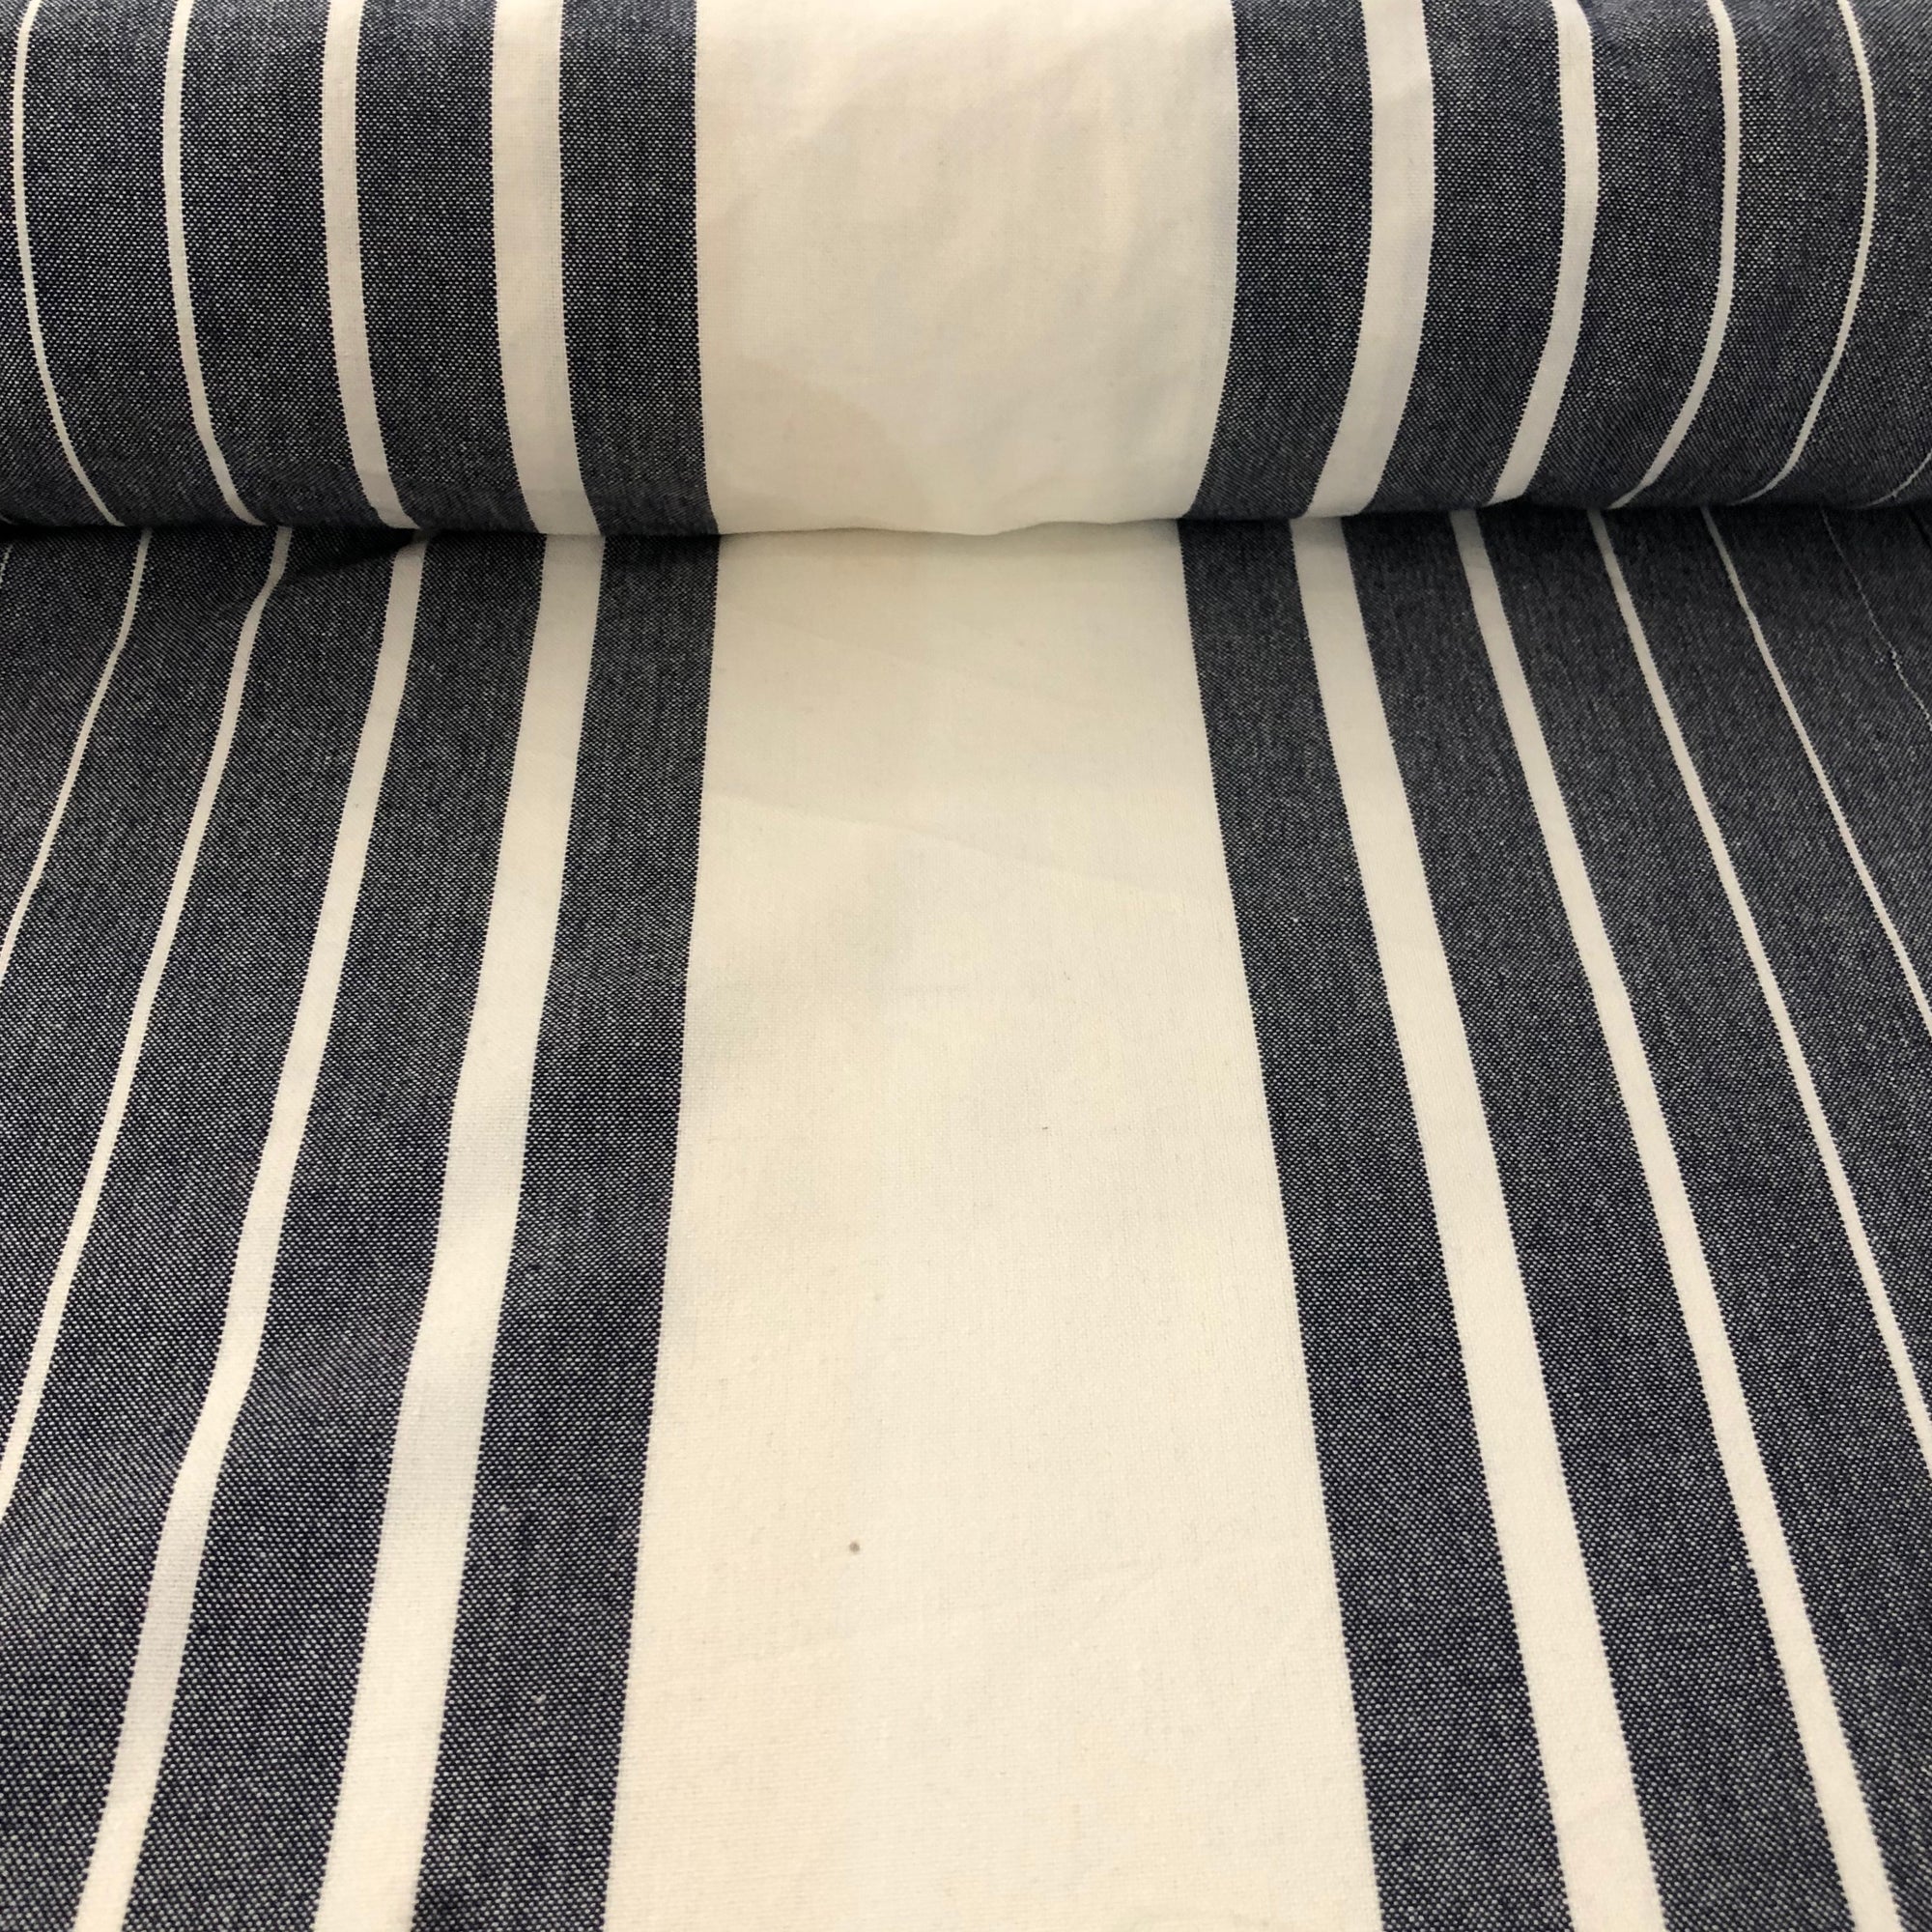 Vista Toweling stripes white on indigo